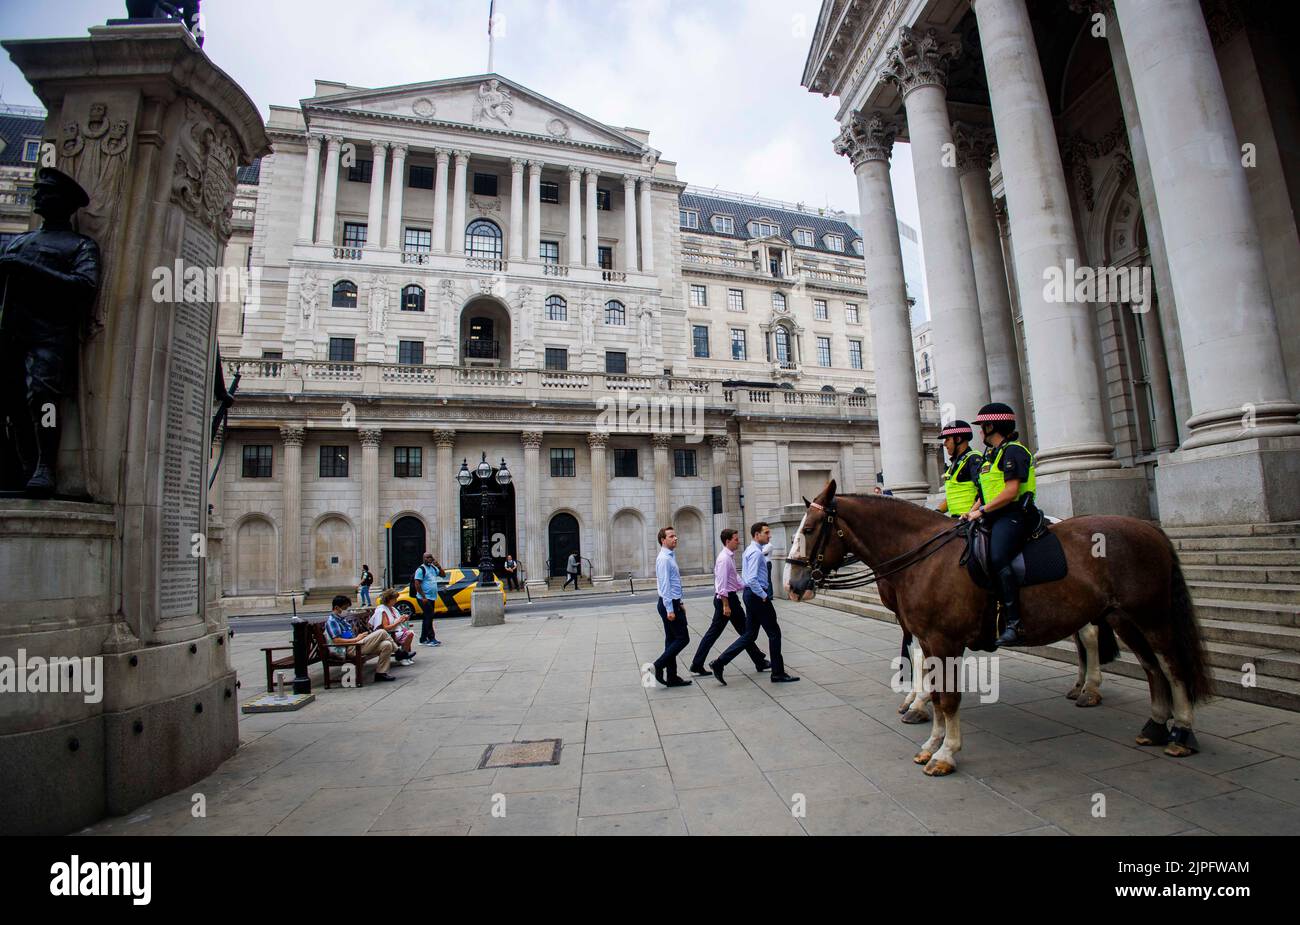 Die Bank of England in der Threadneedle Street ist die Zentralbank des Vereinigten Königreichs. Kürzlich wurde der Zinssatz auf 1,75 % angehoben. Stockfoto